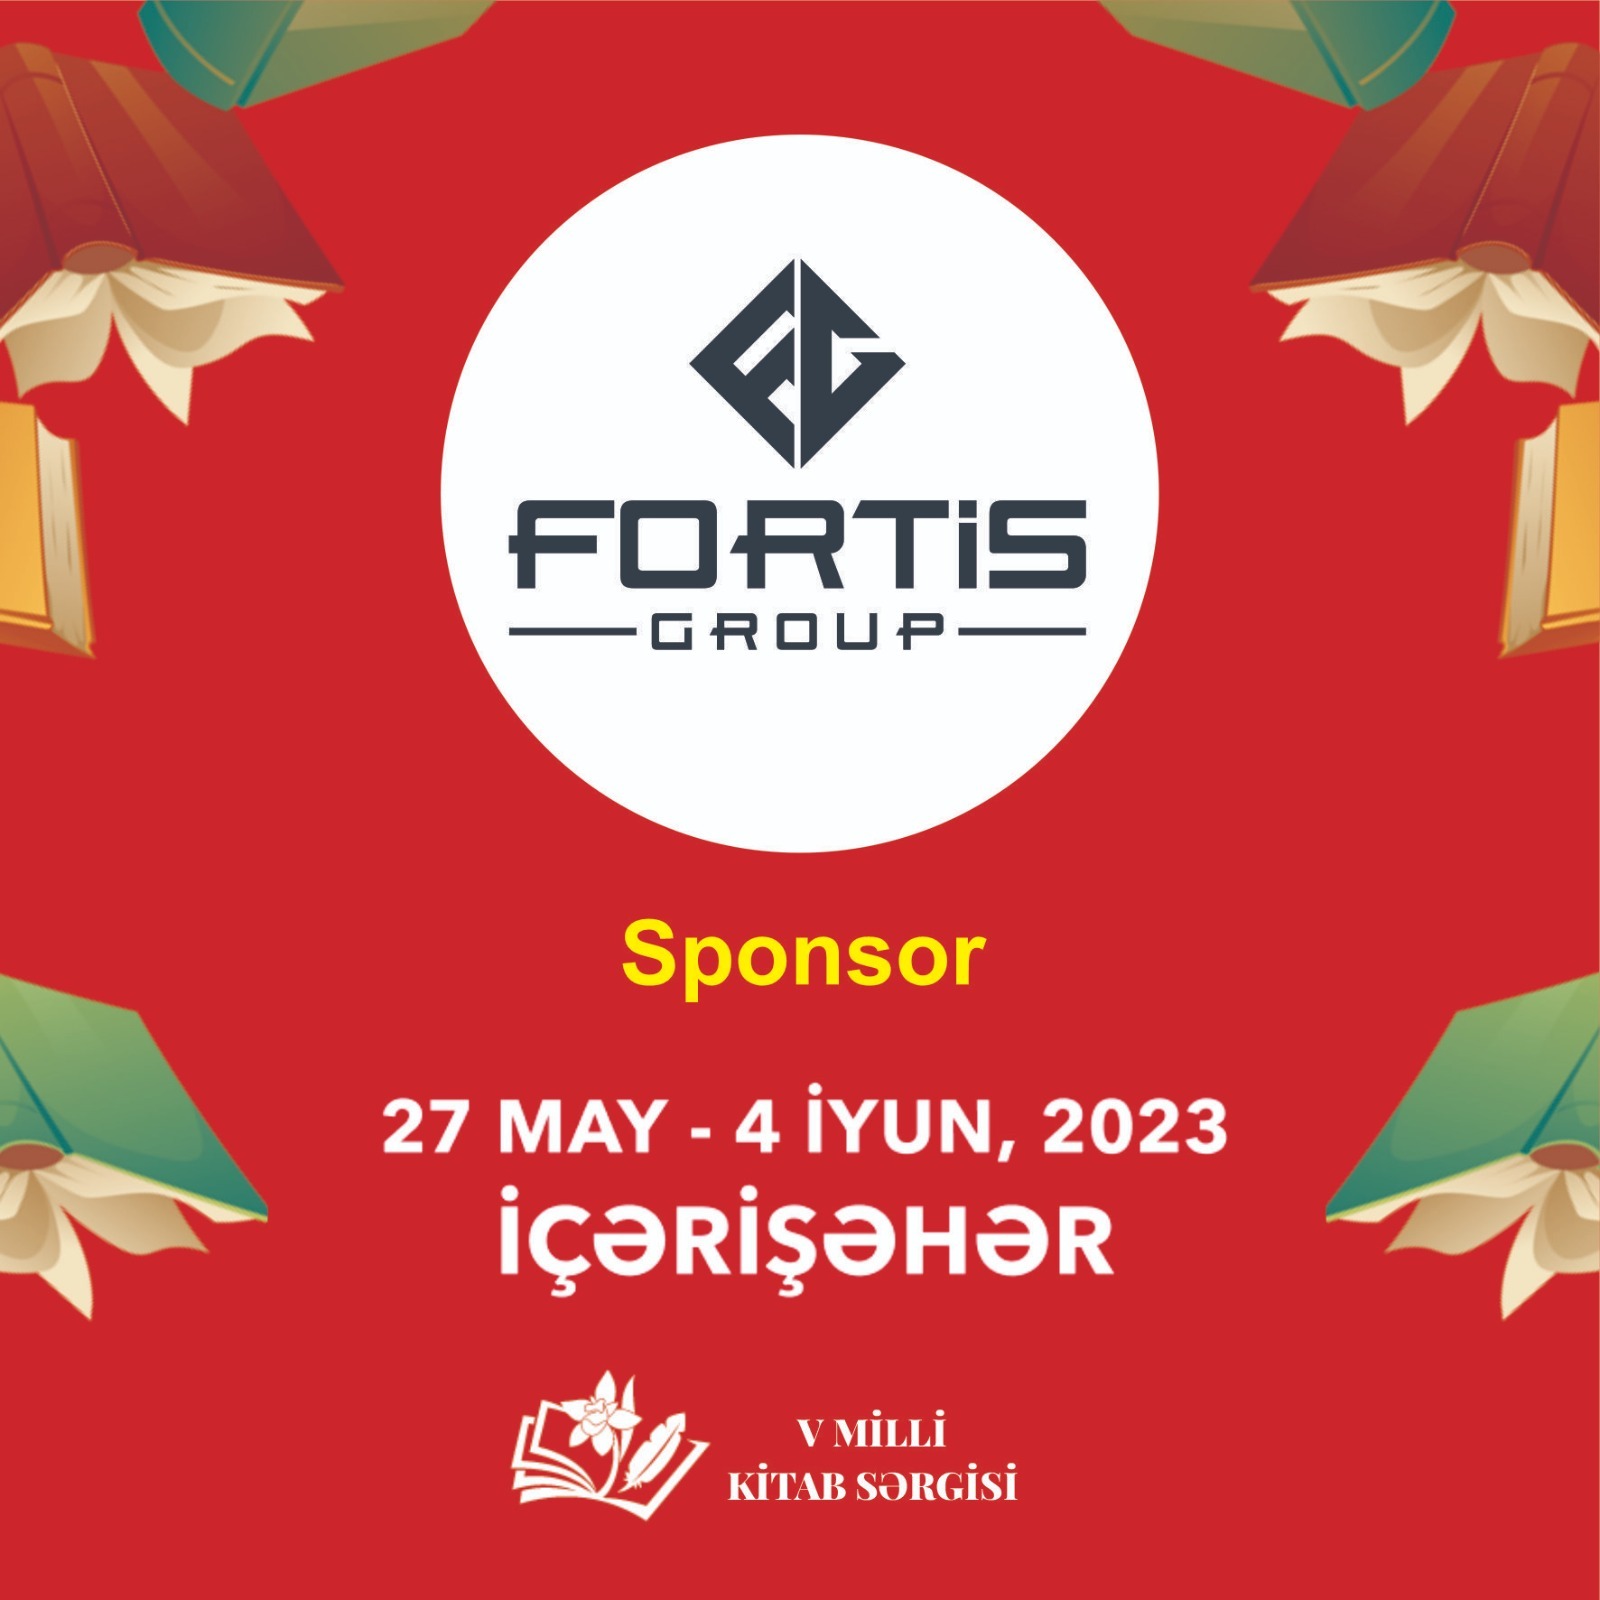 “Fortis Group” MMC Milli Kitab Sərgisinin sponsorudur